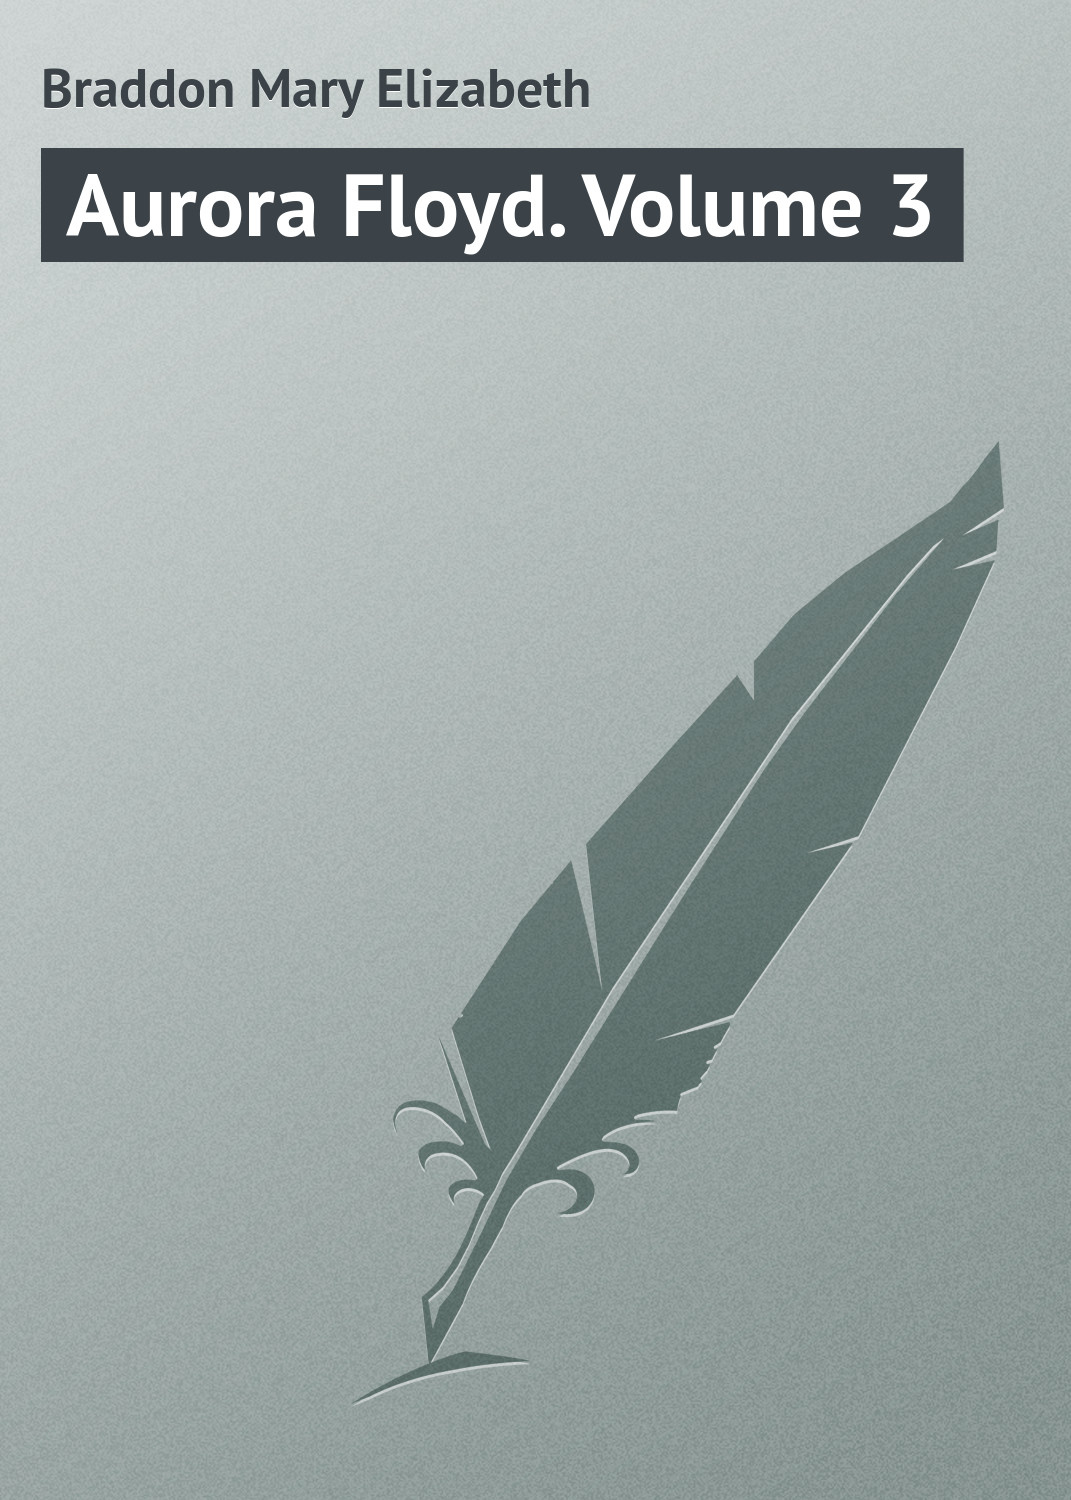 Книга Aurora Floyd. Volume 3 из серии , созданная Mary Braddon, может относится к жанру Иностранные языки, Зарубежная классика. Стоимость электронной книги Aurora Floyd. Volume 3 с идентификатором 23162531 составляет 5.99 руб.